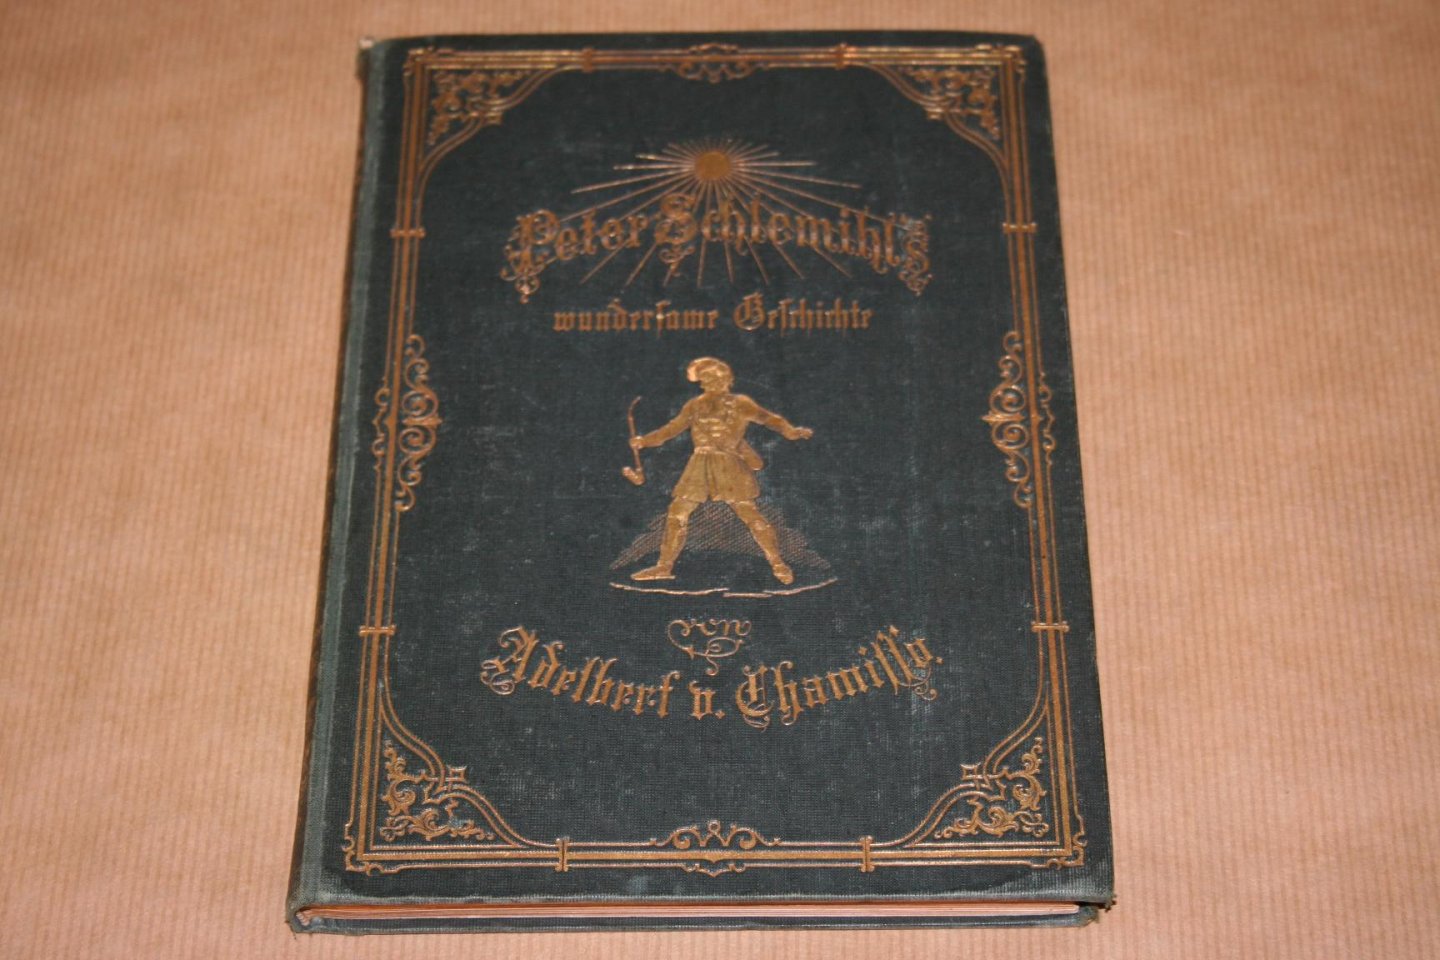 Adelbert von Chamisso - Peter Schlemihl's wundersame Geschichte